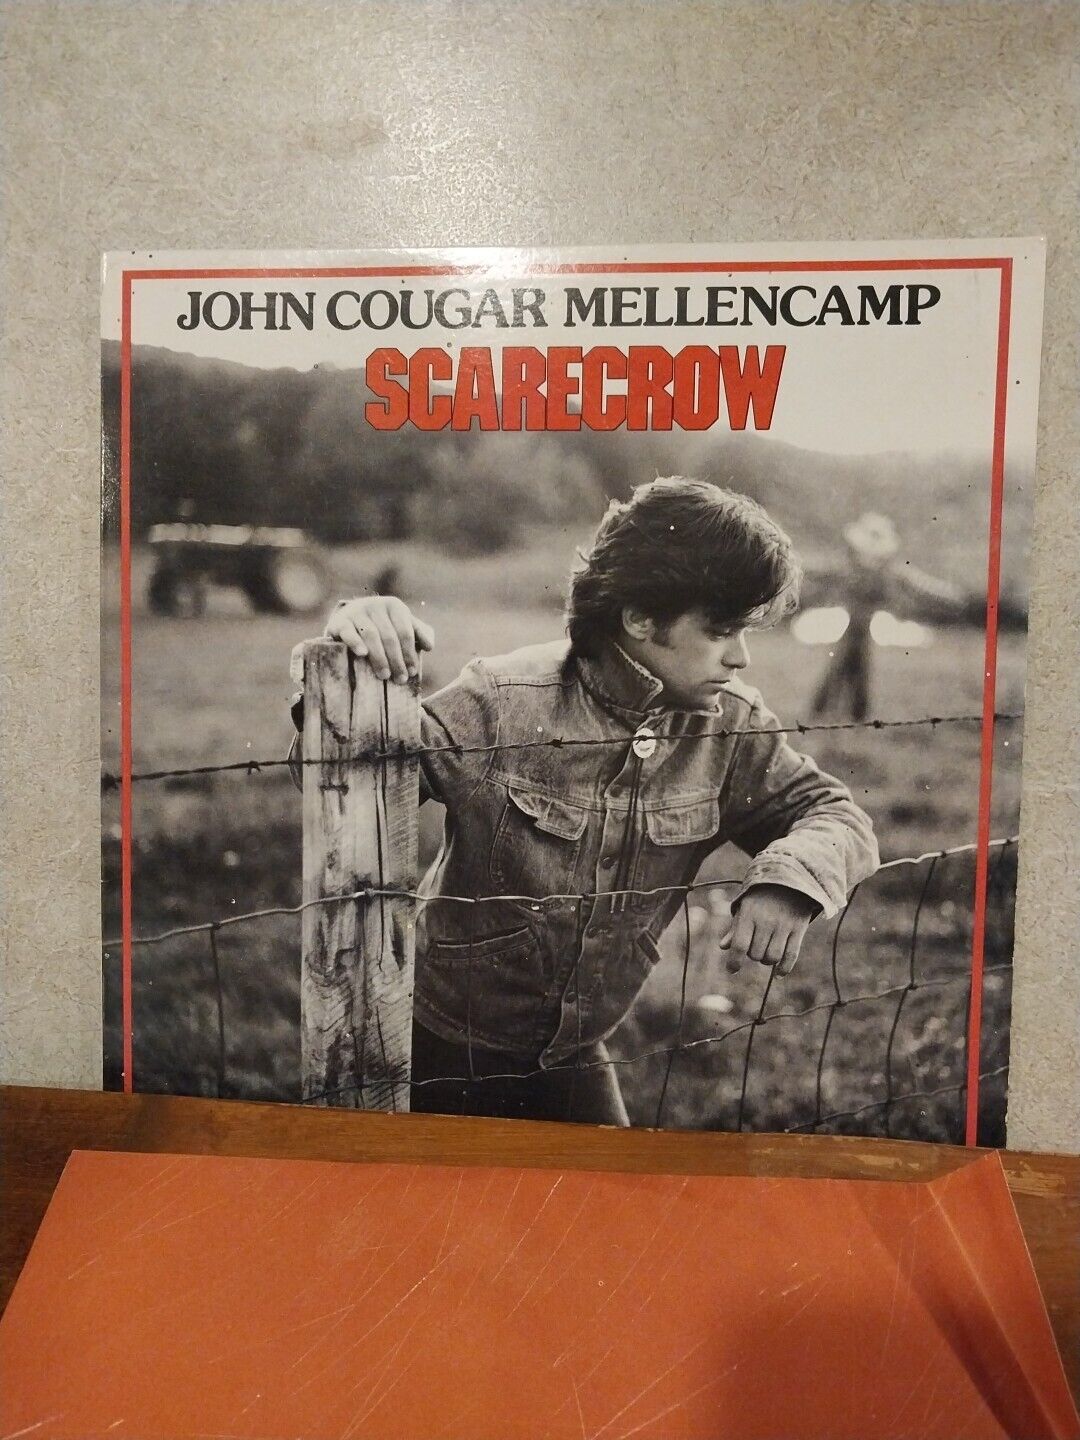 John Cougar Mellencamp - Scarecrow , 1985 Vinyl Record Album, VG+